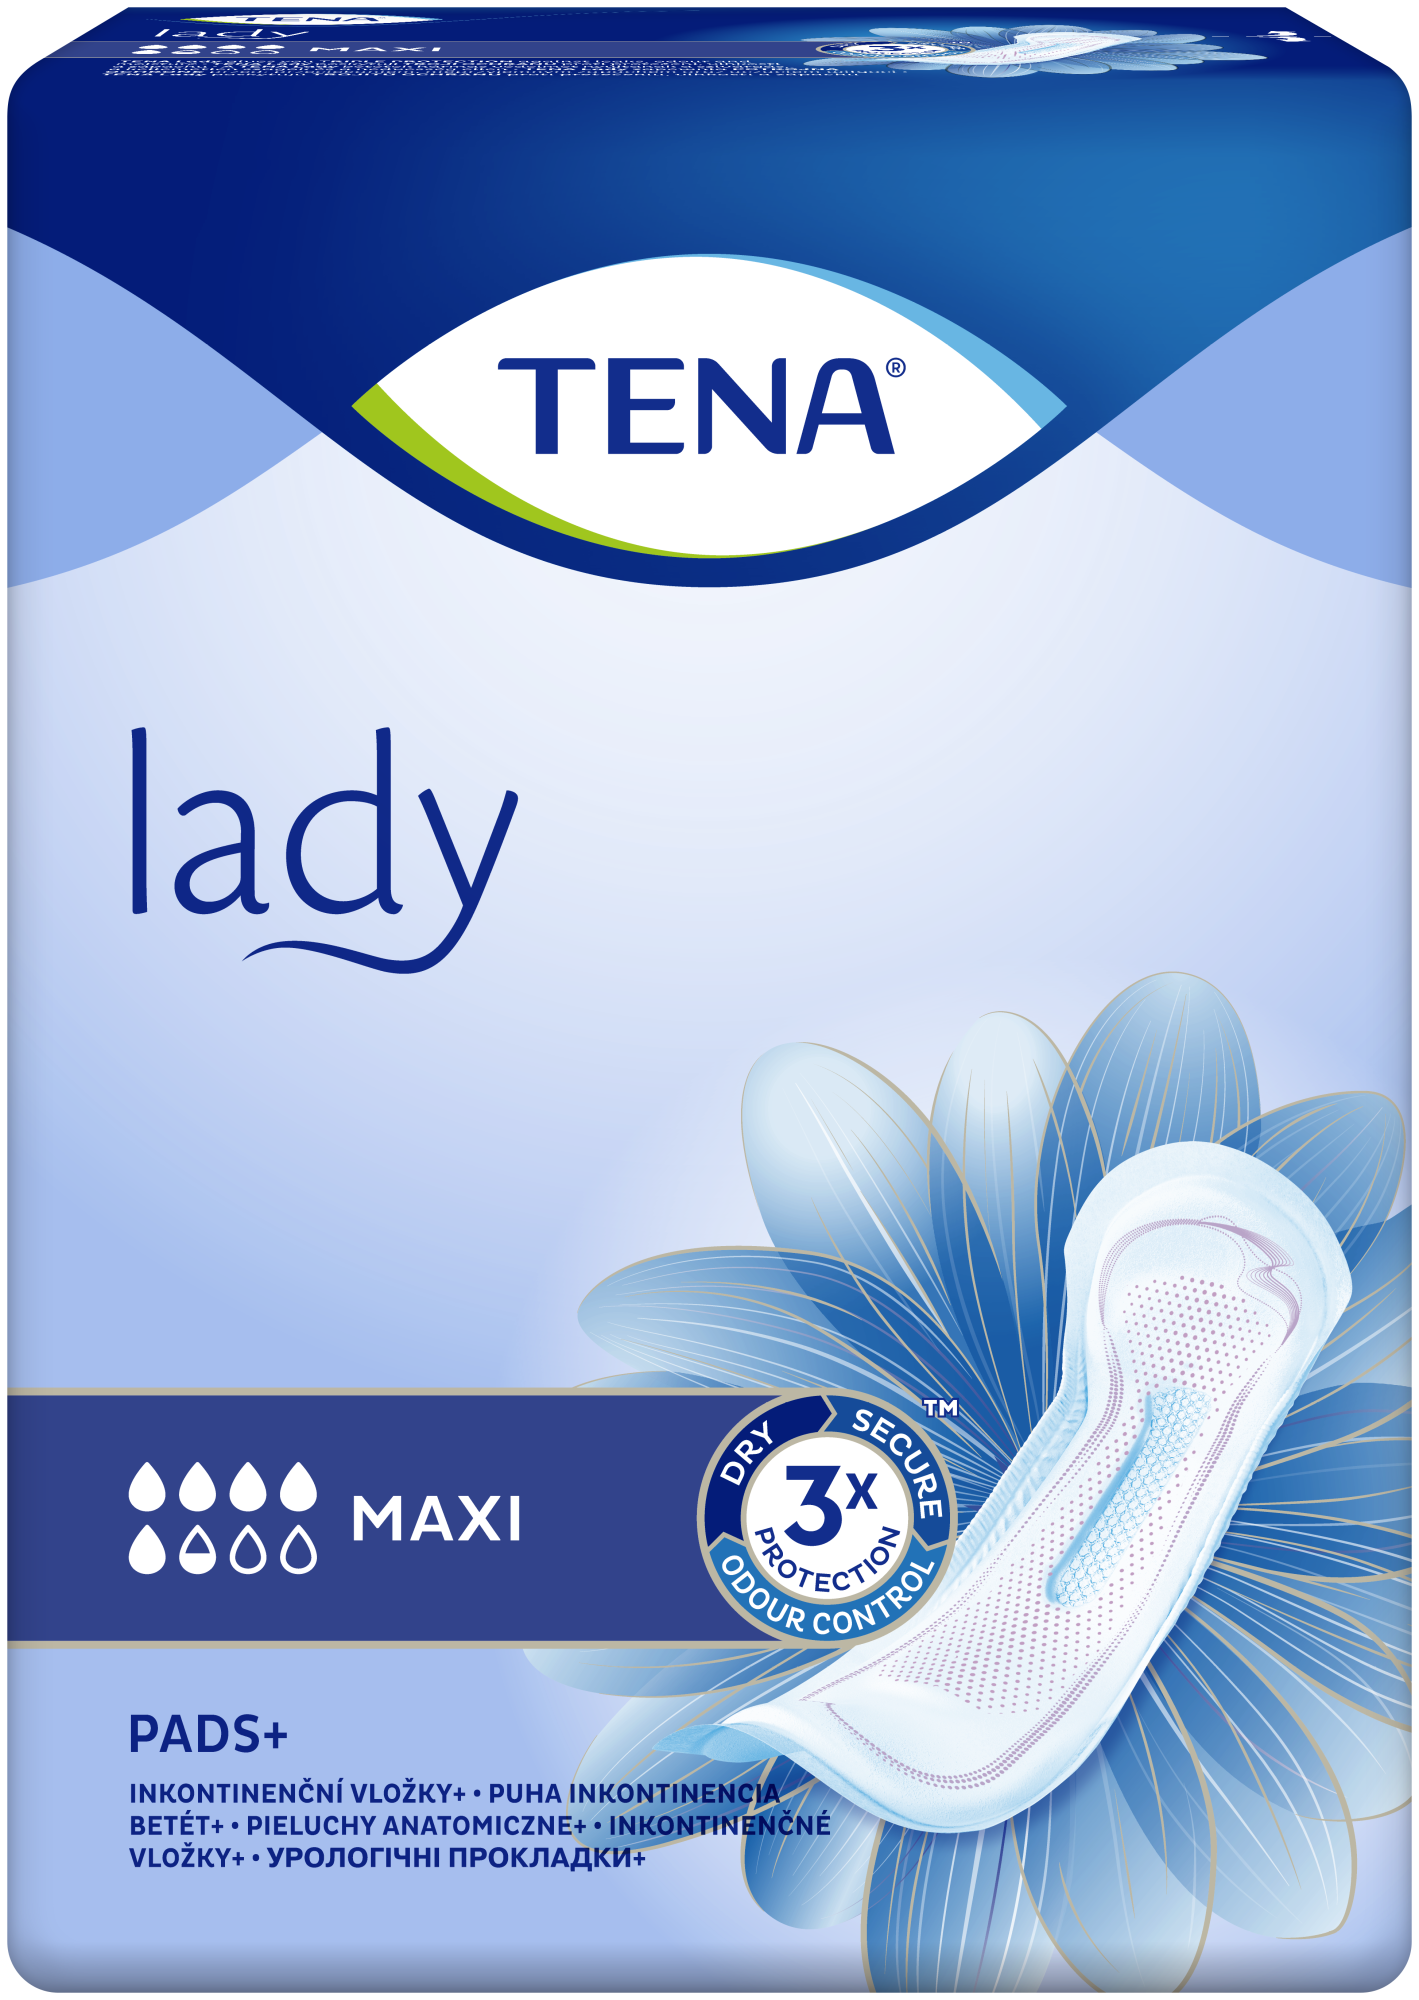 tena lady night maxi